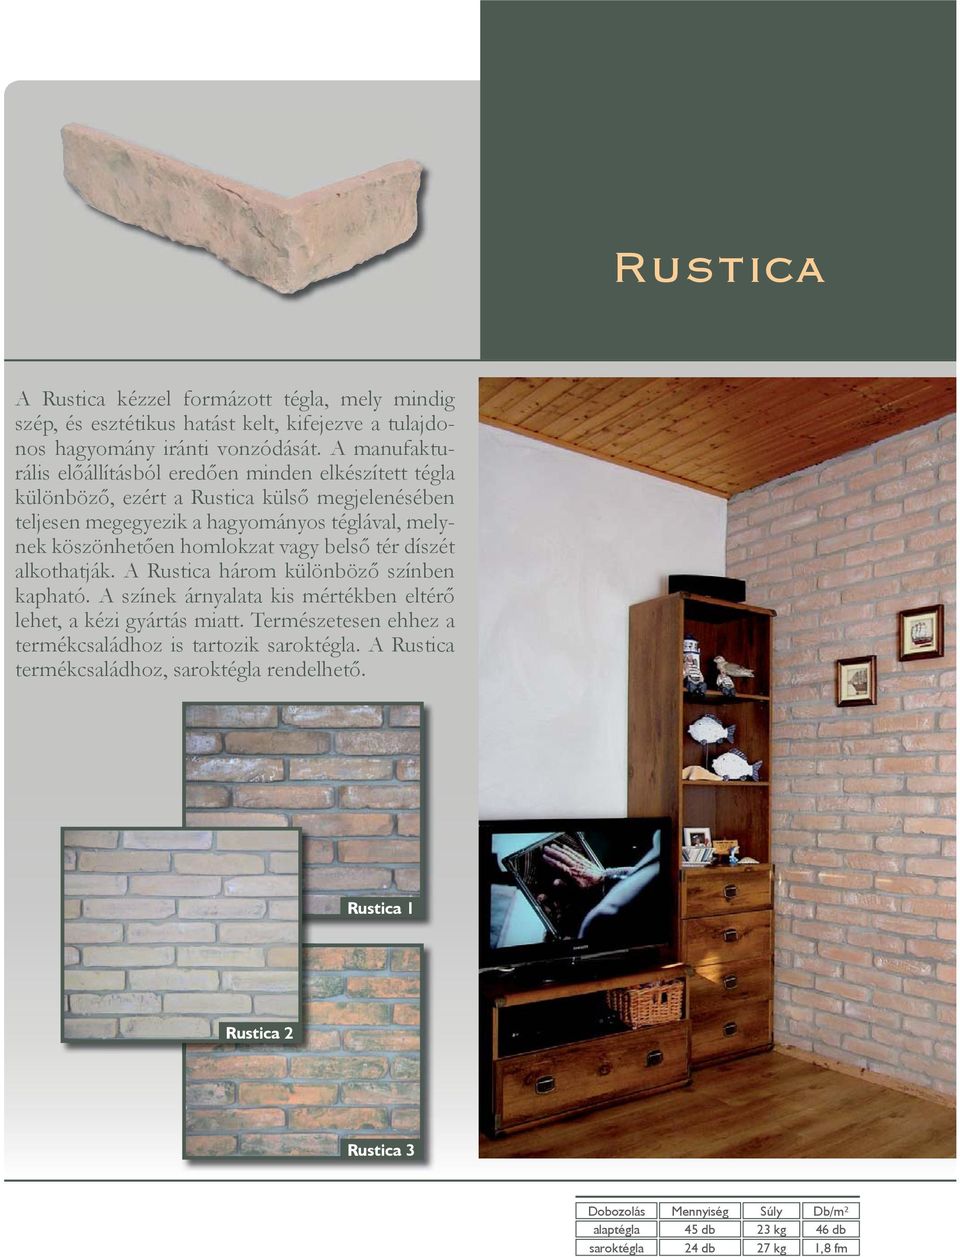 köszönhetően homlokzat vagy belső tér díszét alkothatják. A Rustica három különböző színben kapható.